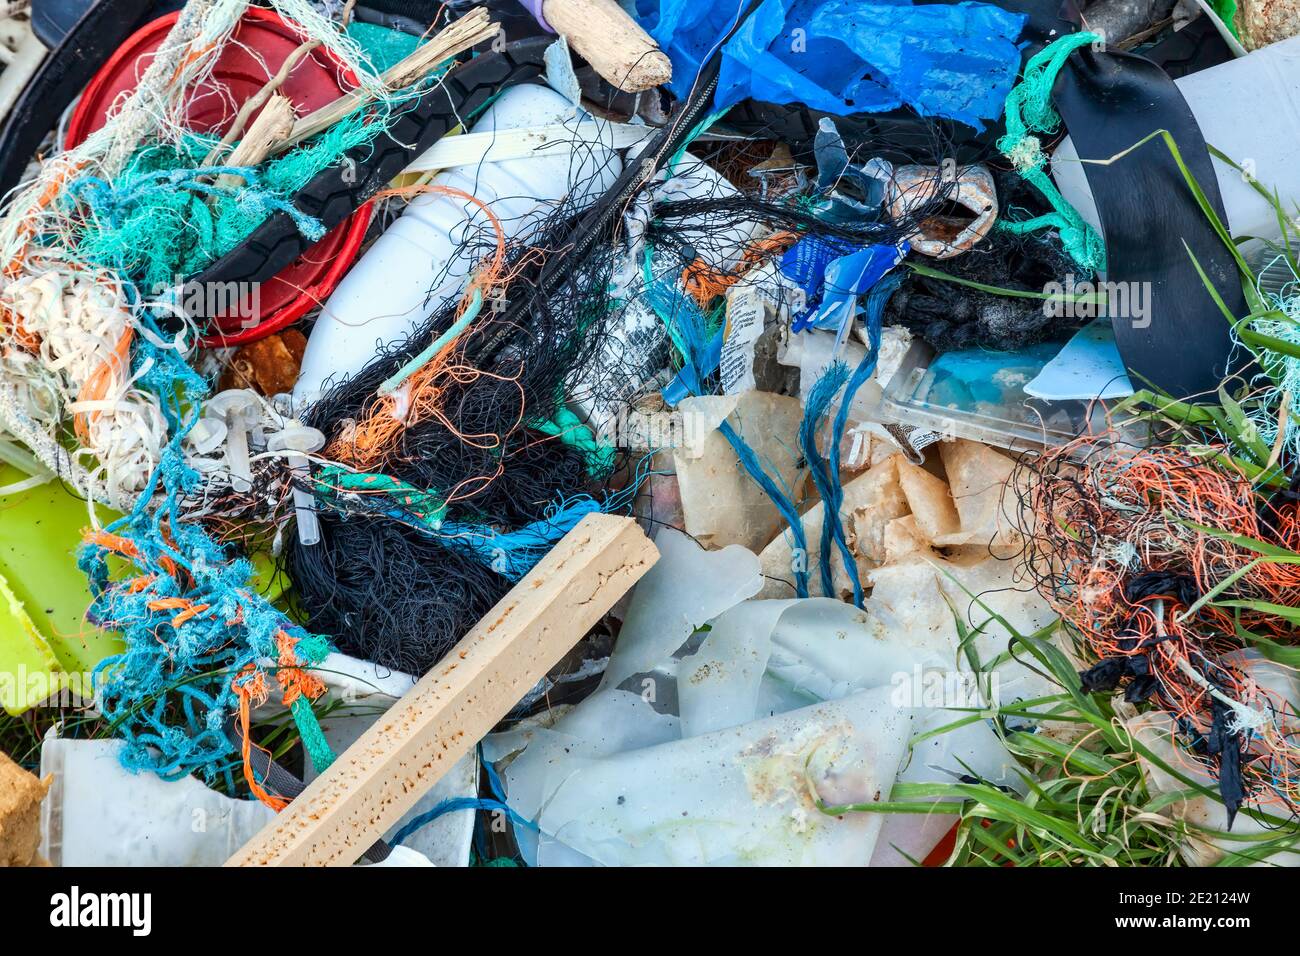 Déchets plastiques avec filets de l'industrie de la pêche enroulés sur une plage côtière causant des déchets de pollution de mer et des dommages environnementaux, stock Banque D'Images